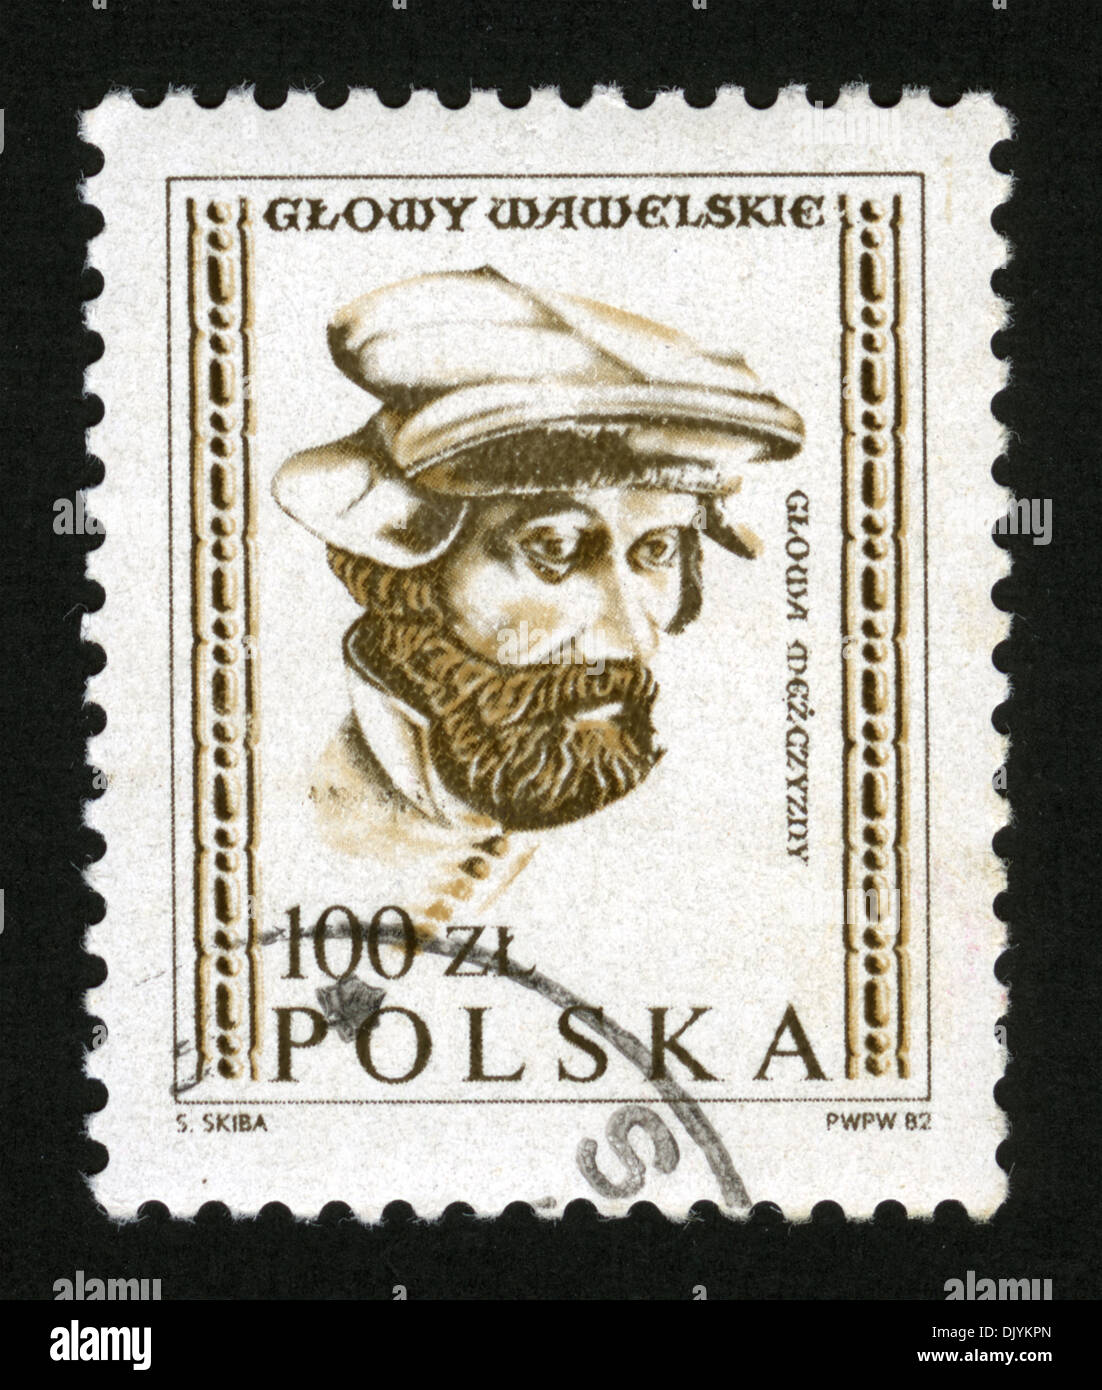 Poland, post mark, stamp, portrait, 1982s, Glowy Wawelskie, Chapter Wawel Stock Photo